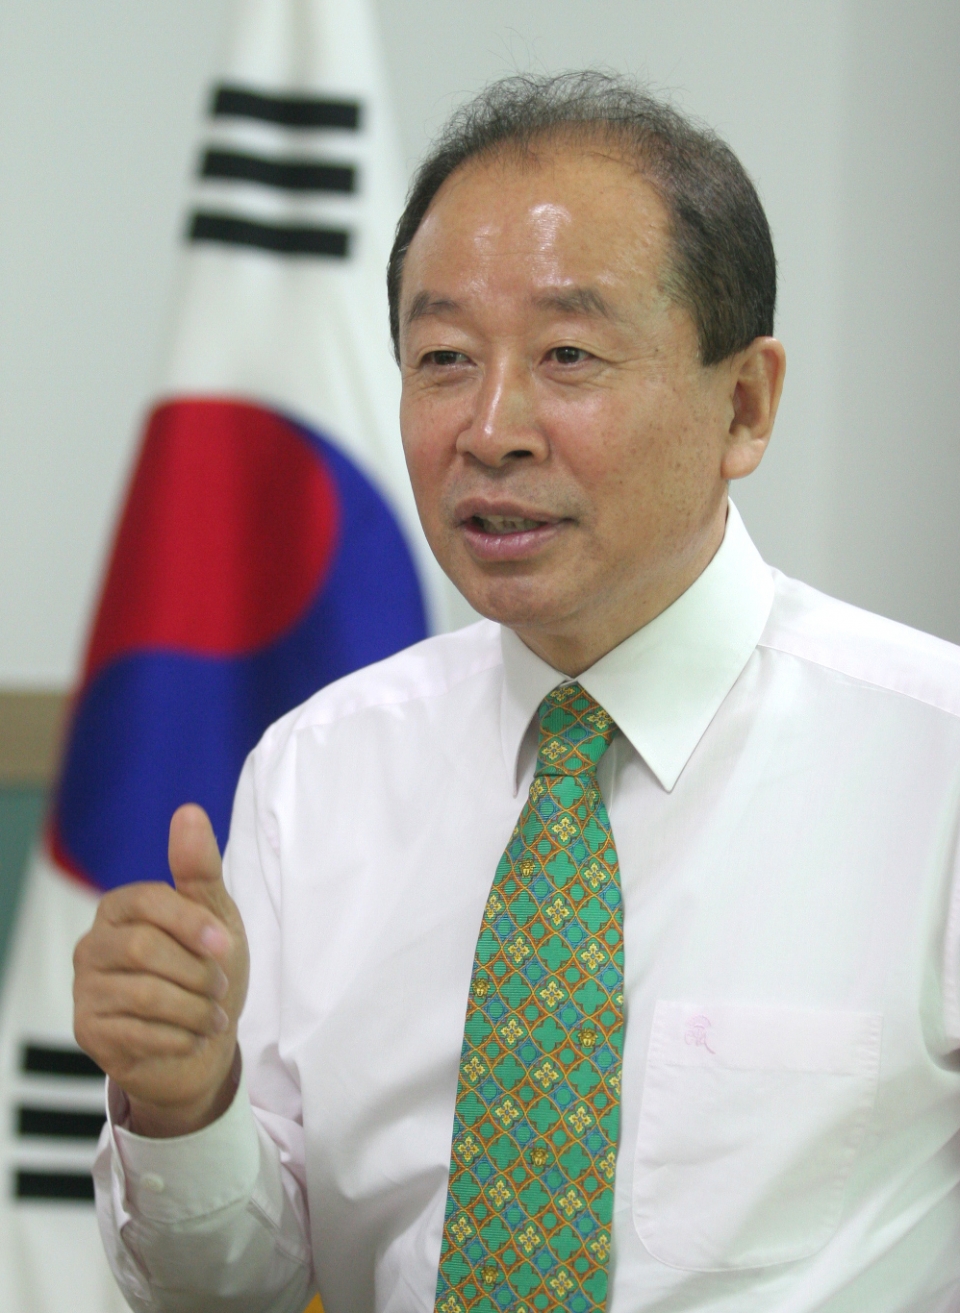 임정엽 민주당 선대위 미래경제단장(전 완주군수)